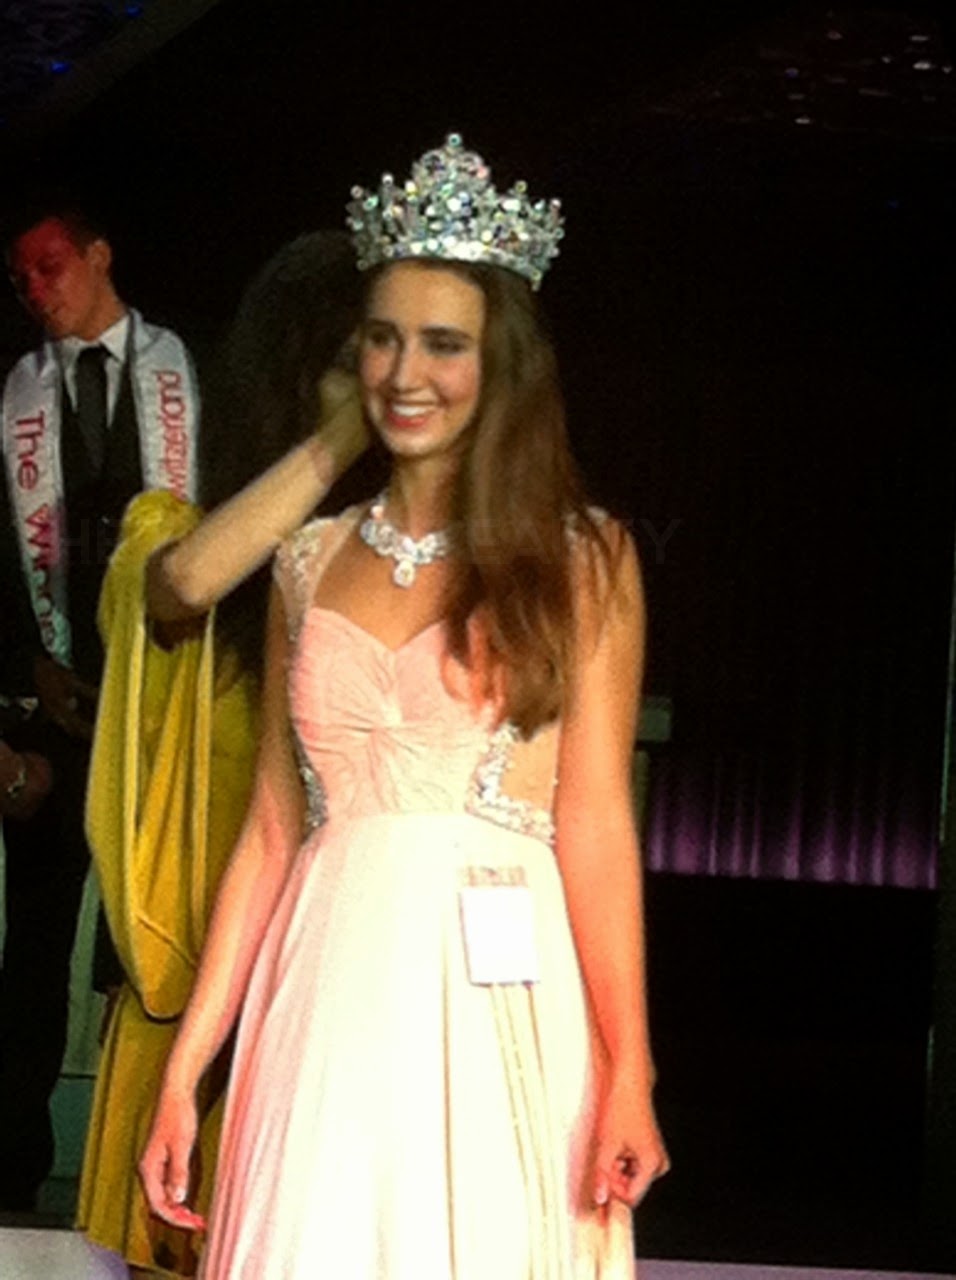 Miss World Switzerland 2014 winner Aline Morger